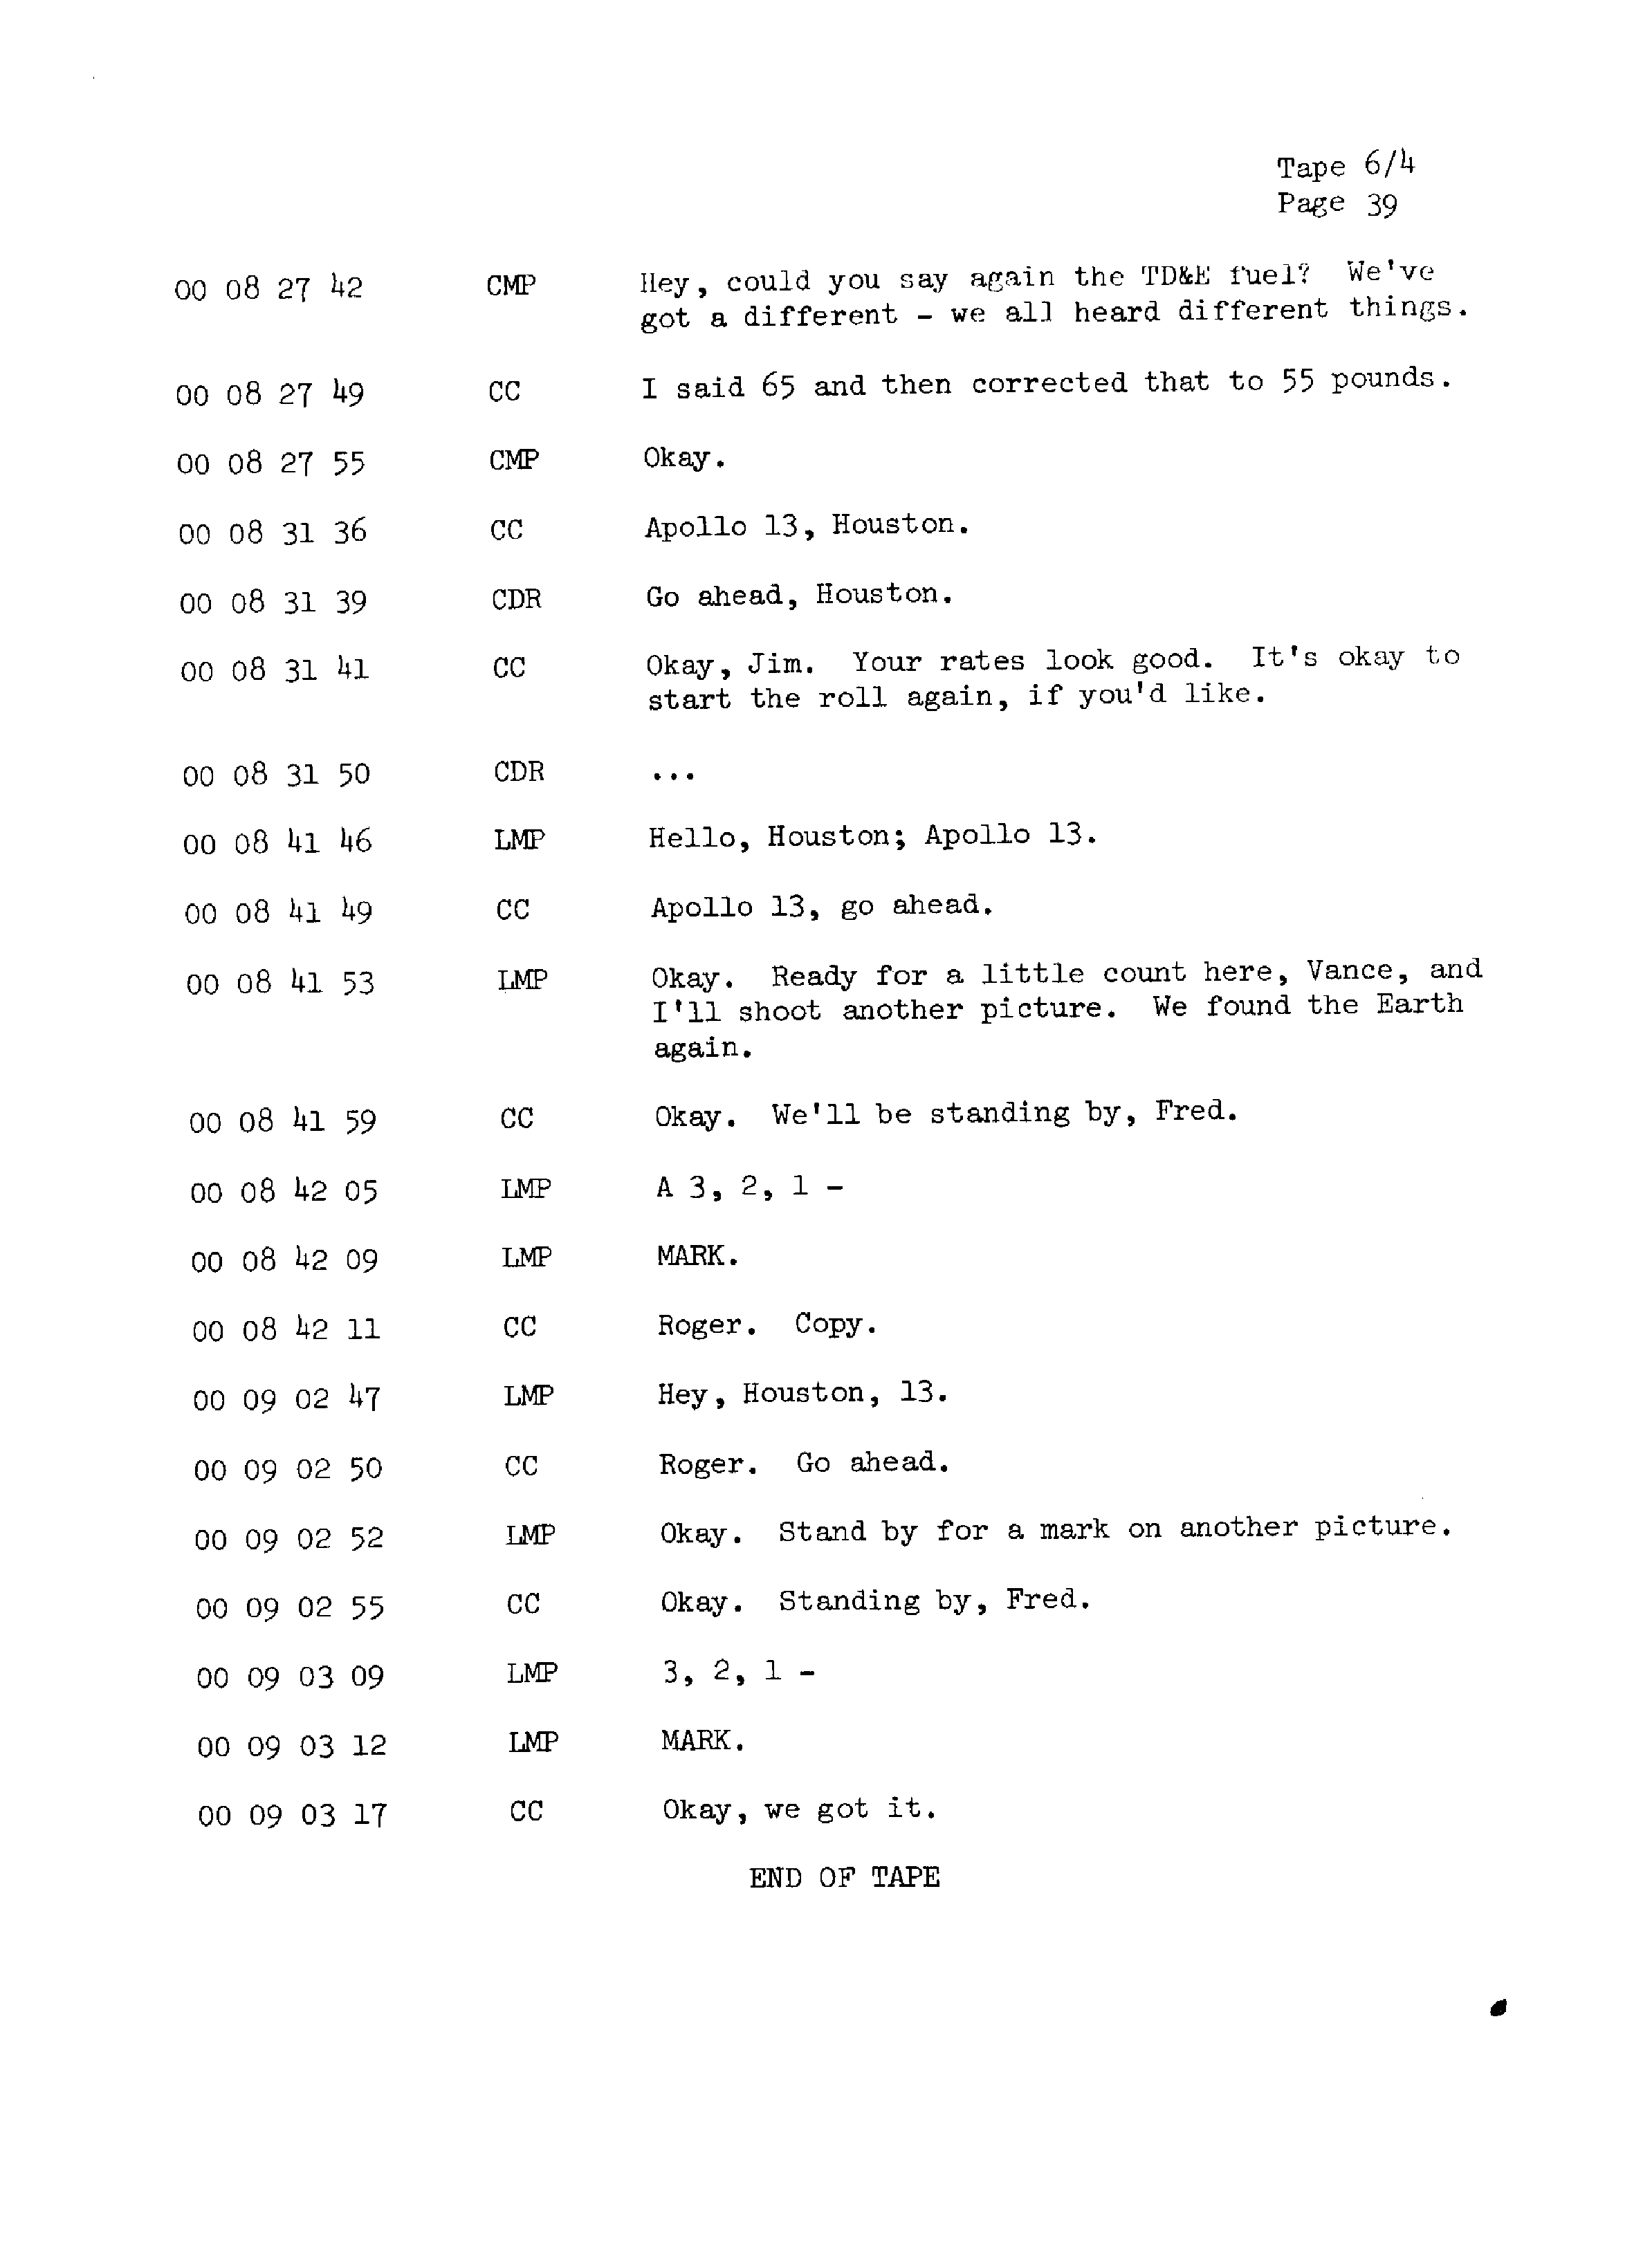 Page 46 of Apollo 13’s original transcript